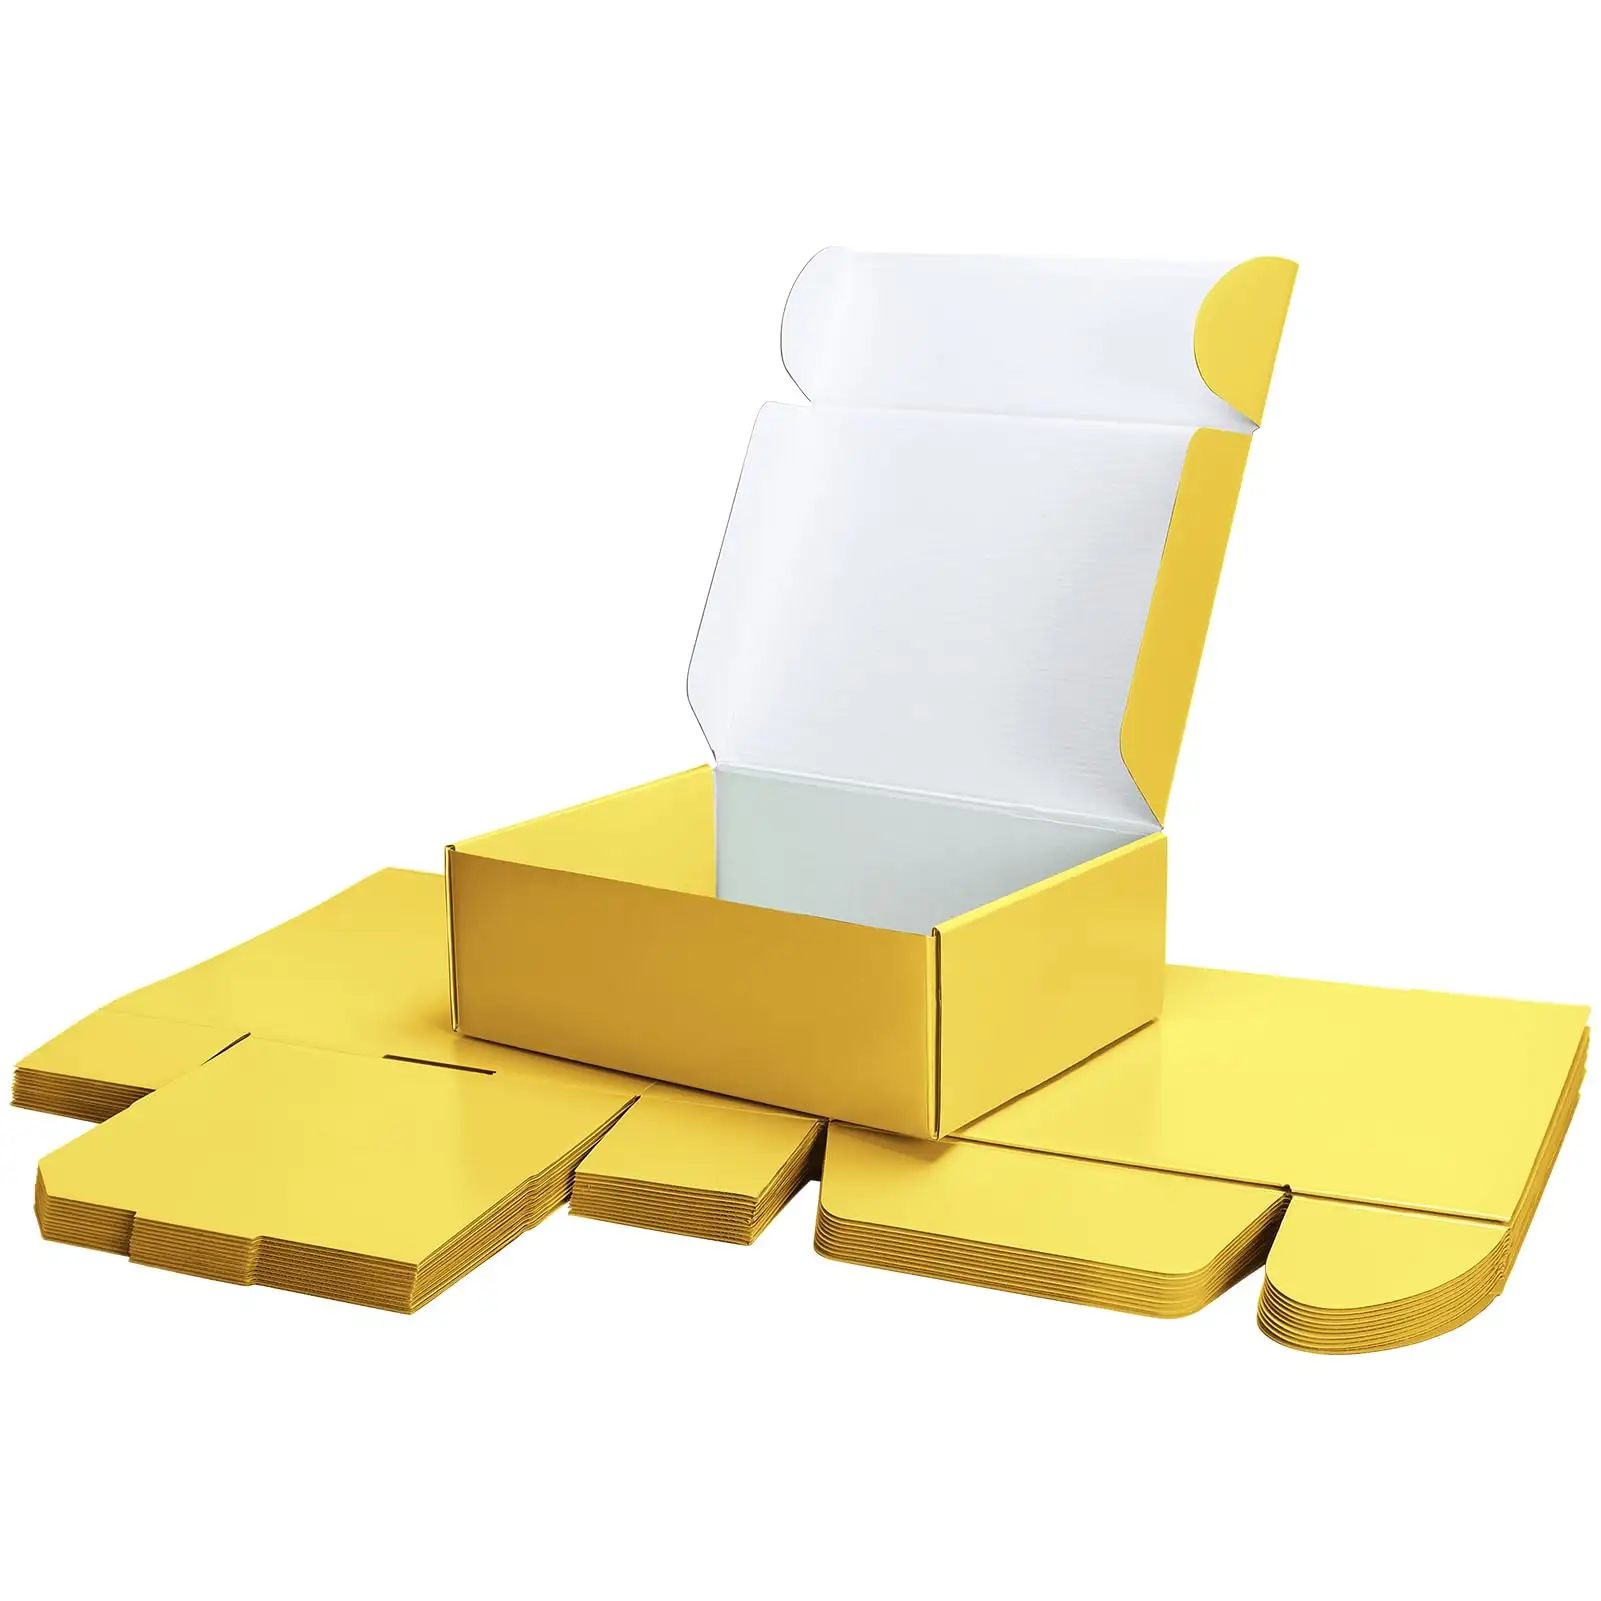 Желтые коробки для доставки картонные подарочные коробки с крышкой для упаковки подарков гофрированные почтовые коробки для упаковки почтовых отправок